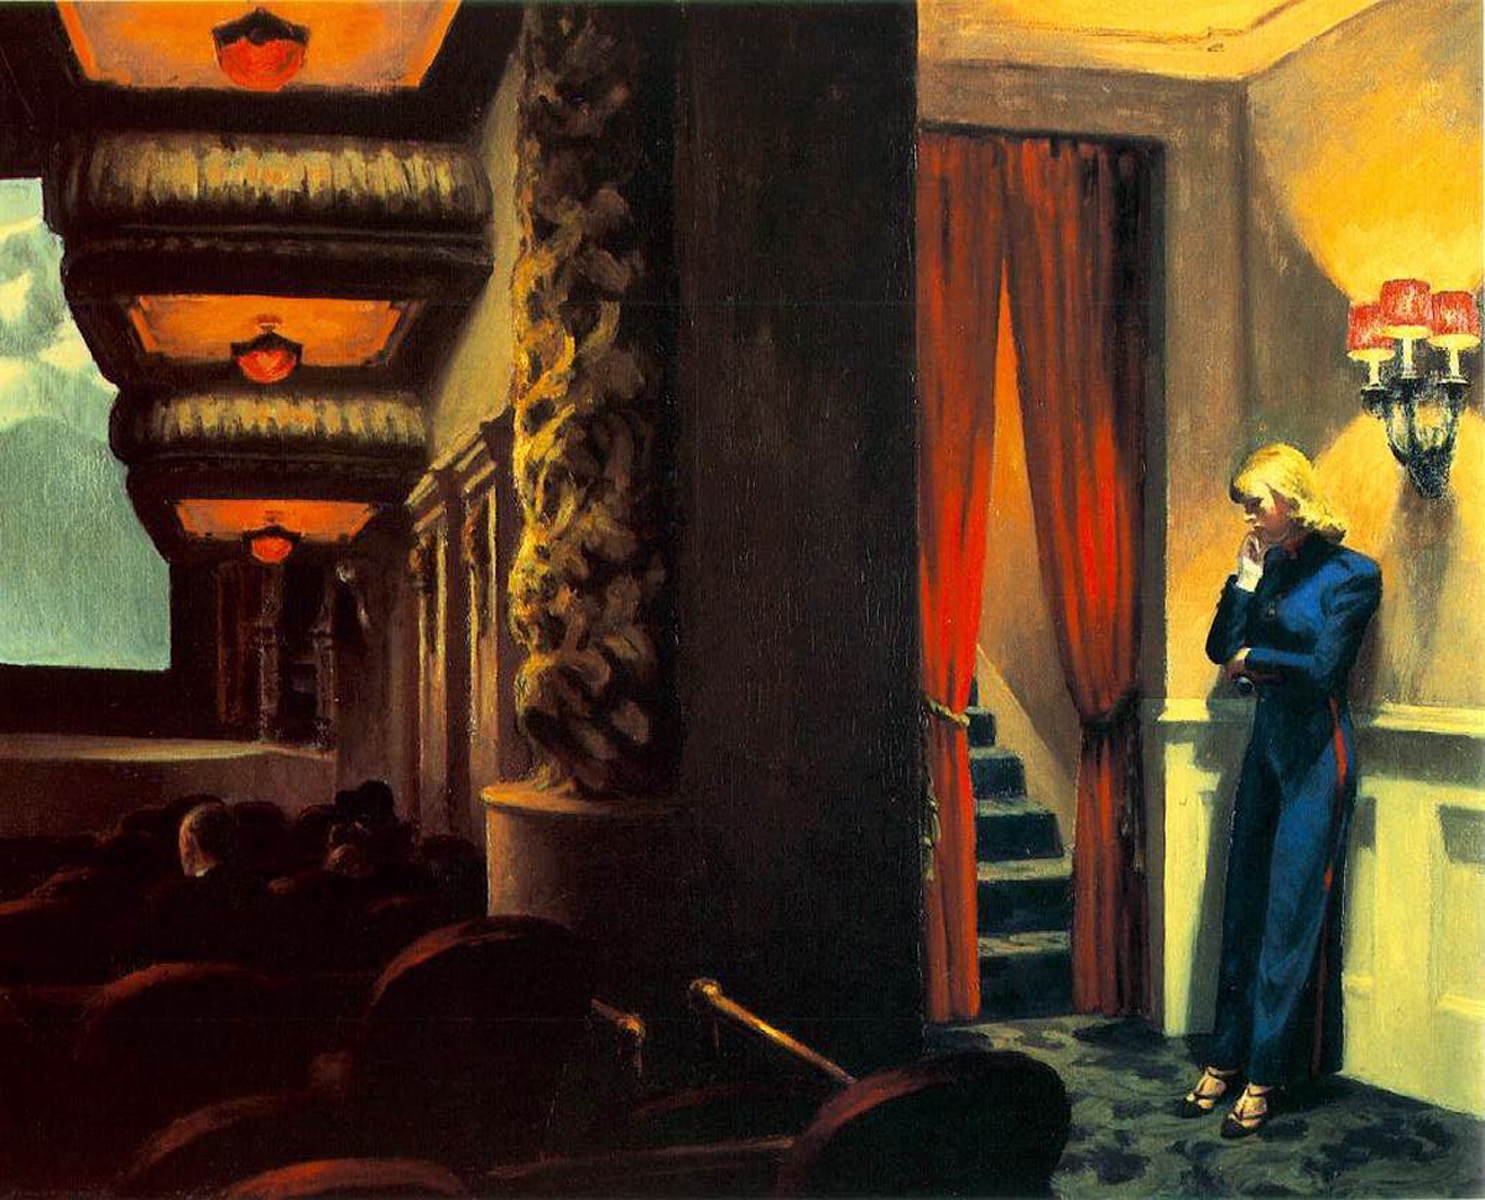 Σινεμά στη Νέα Υόρκη by Έντουαρντ Χόπερ - 1939 - 81.9 x 101.9 cm 